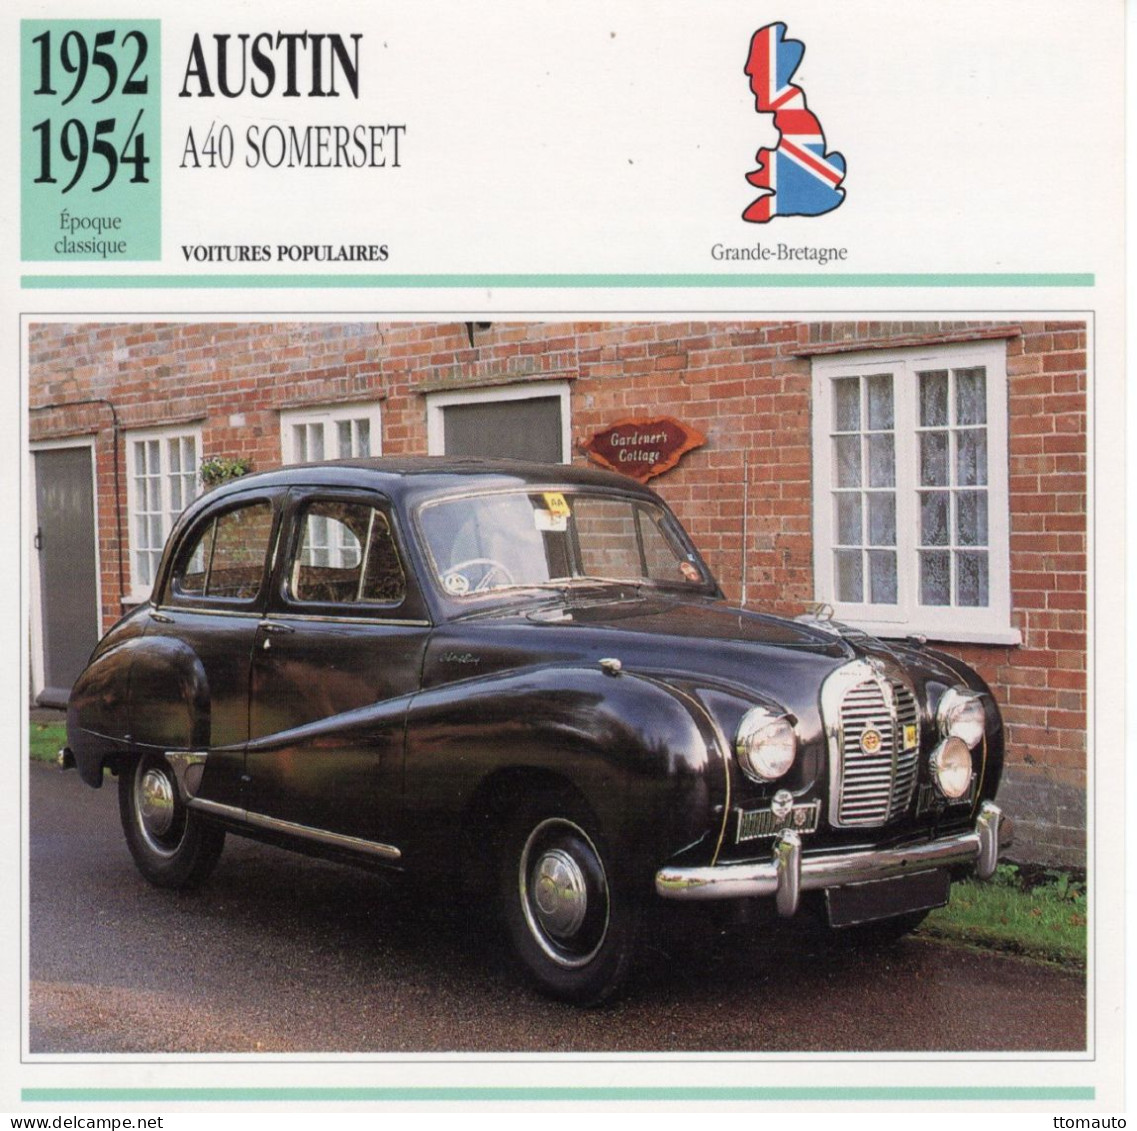 Austin A40 Somerset -  1953  - Voiture Populaire -  Fiche Technique Automobile (GB) - Cars